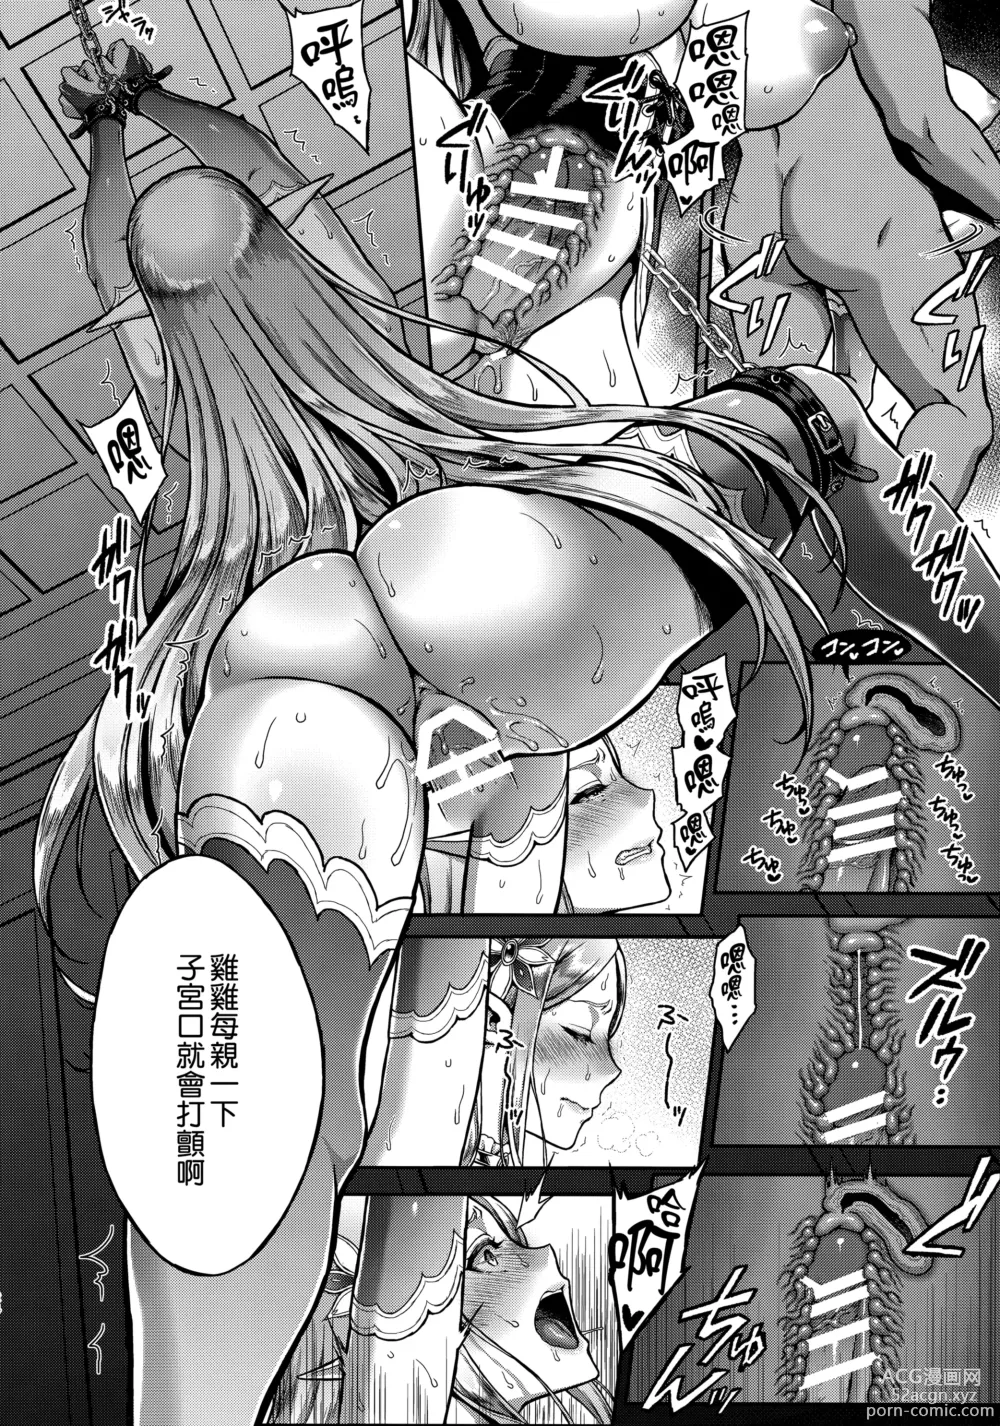 Page 21 of doujinshi Tasogare no Shou Elf 5